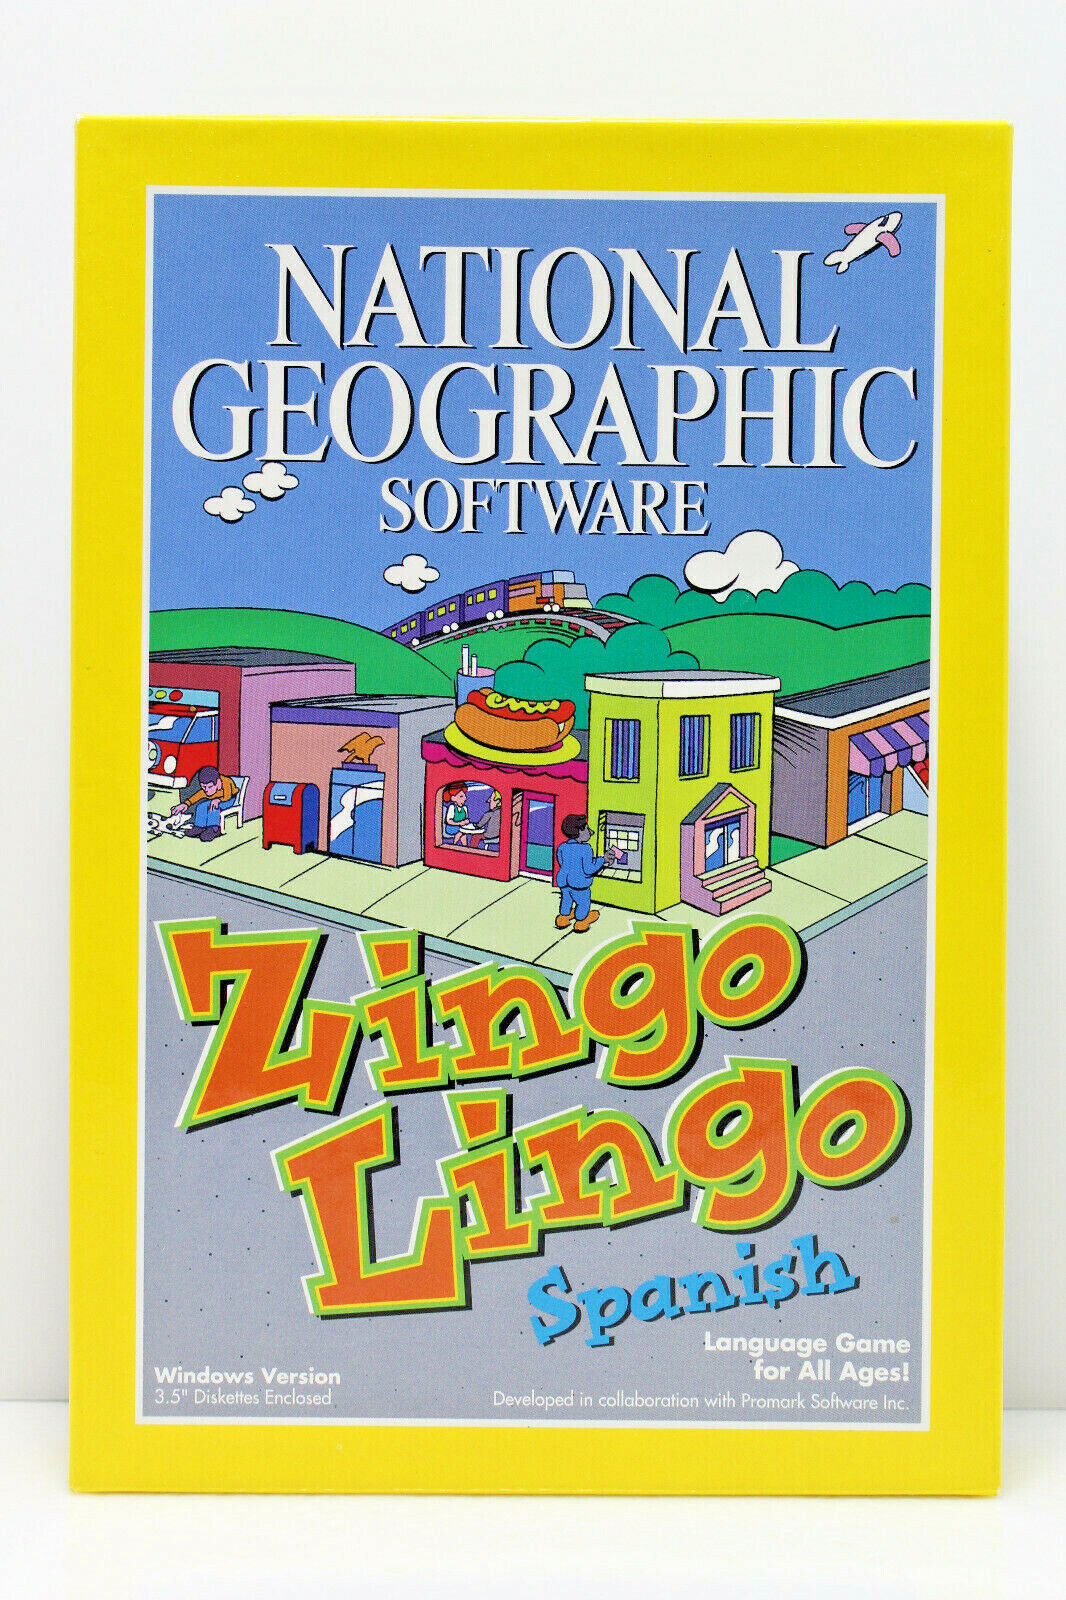 National Geographic Software - Zingo Lingo Spanish Language Game (IBM PC, 1995)